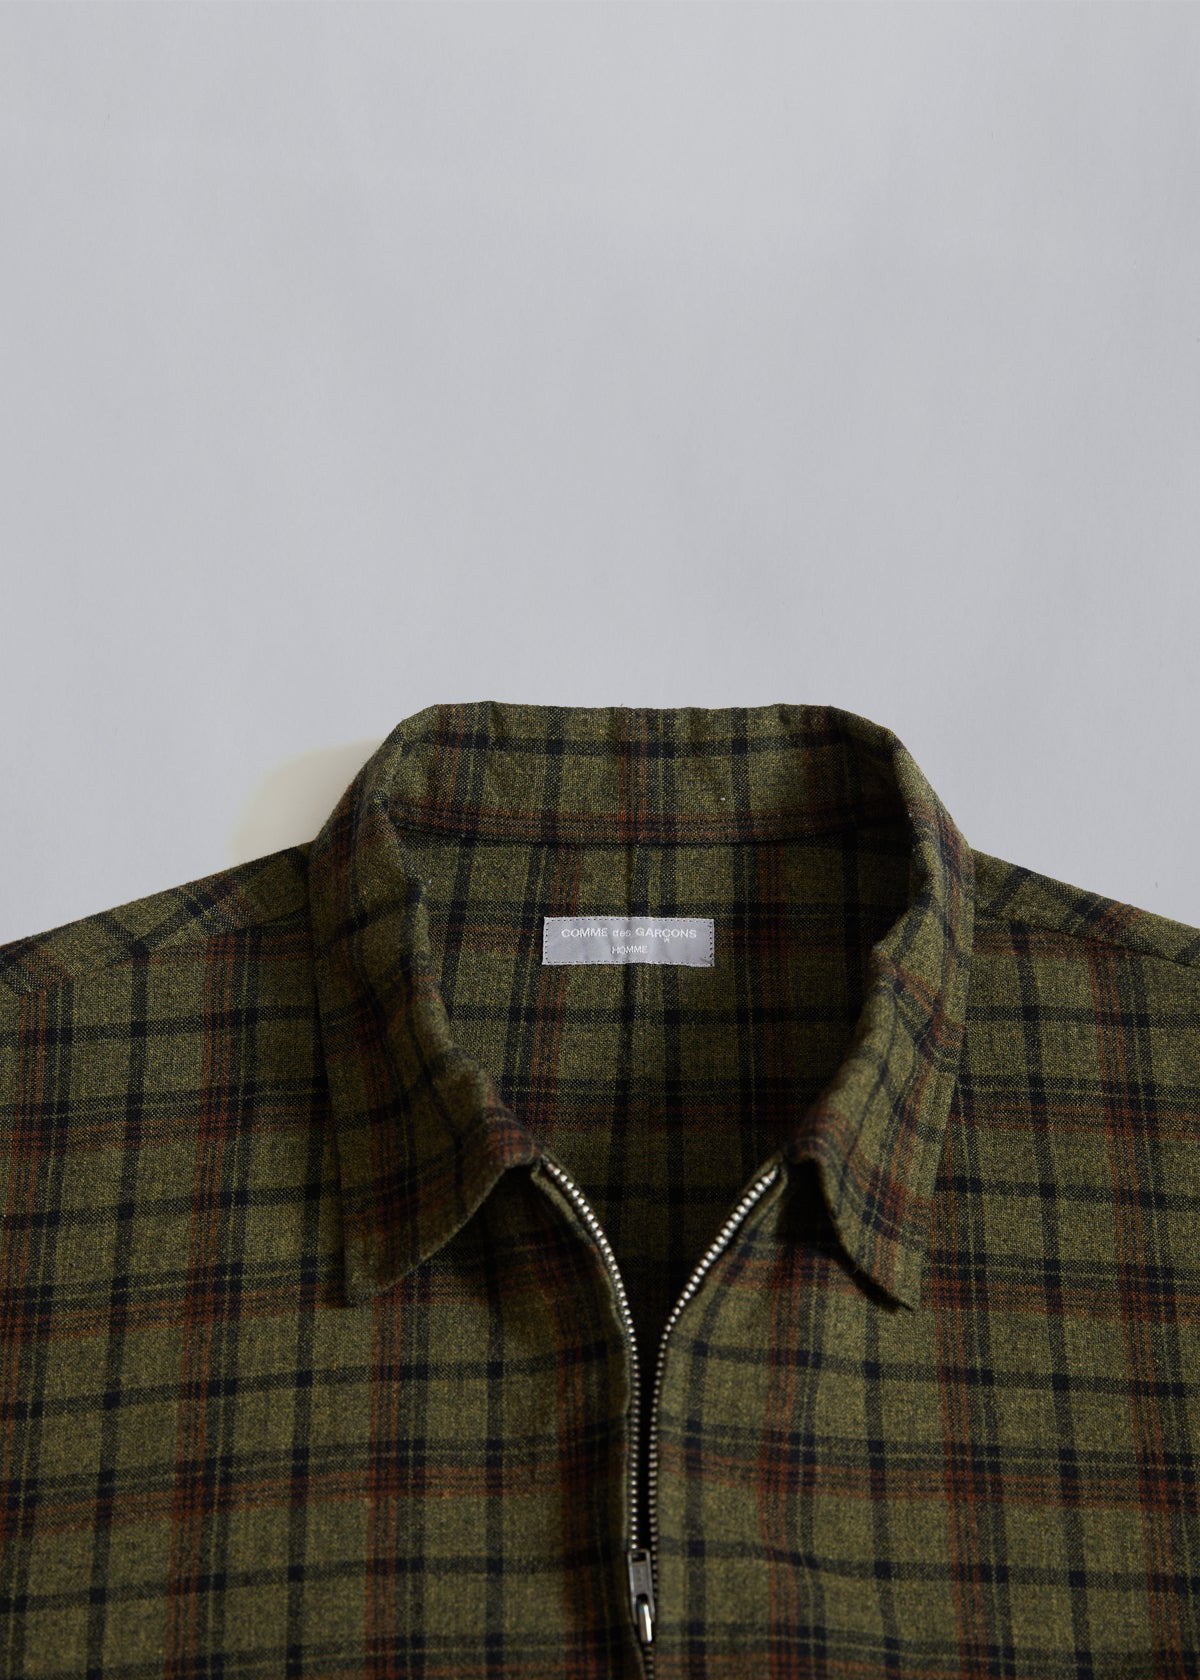 CDG Homme Mixed Fabric Chekered Zip Overshirt 2000 - Medium